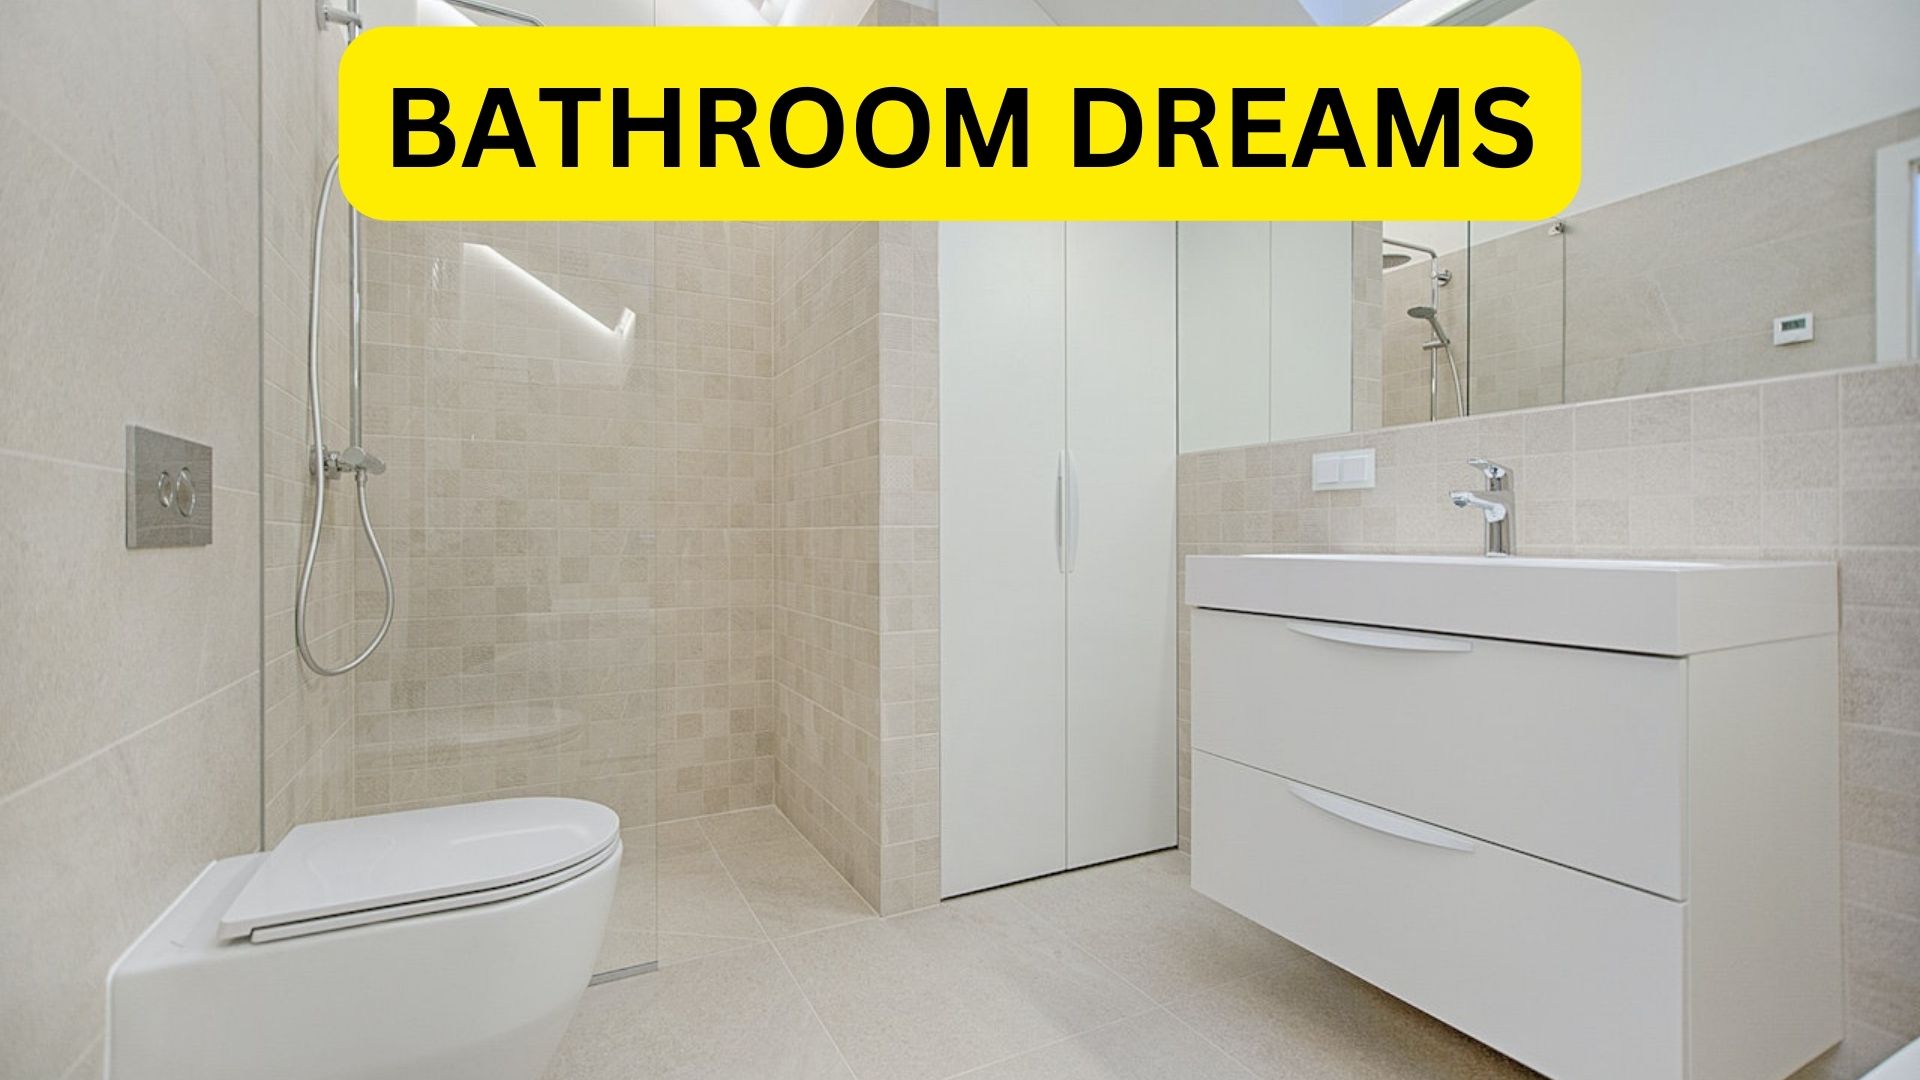 Bathroom Dreams - Represents Intimate Emotions